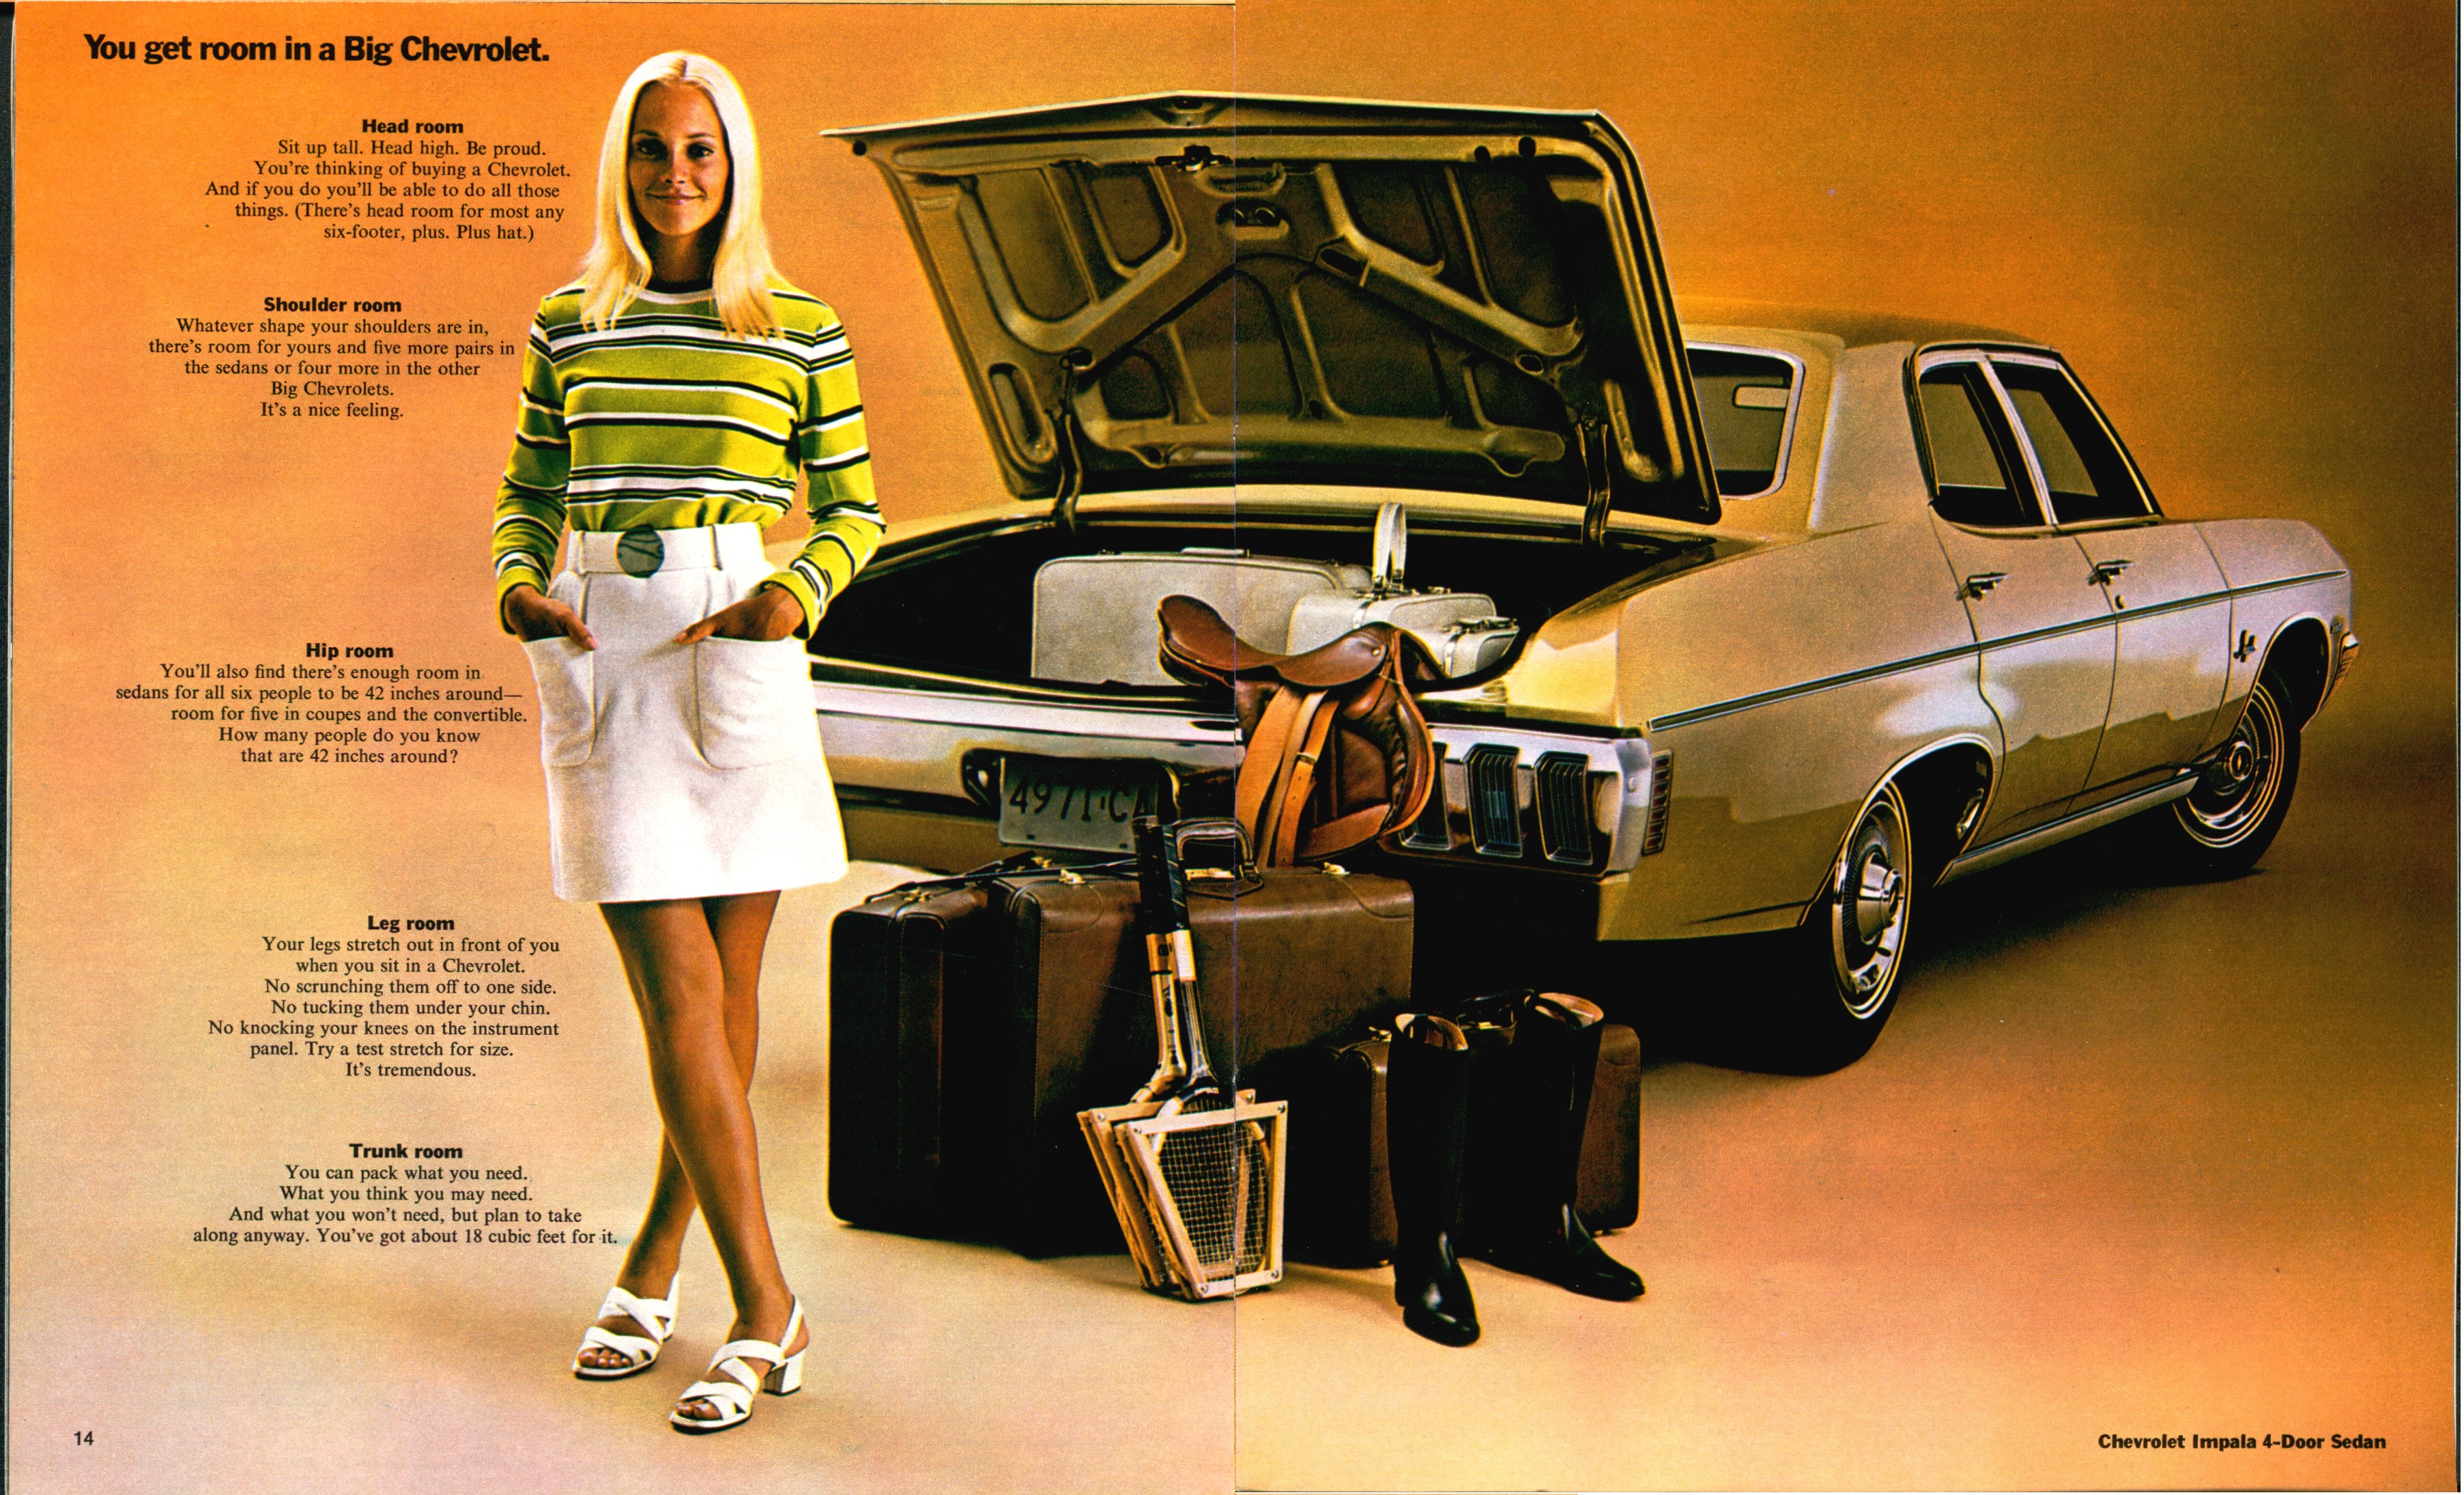 1970 Chevrolet Full Size Brochure (R-1) 14-15